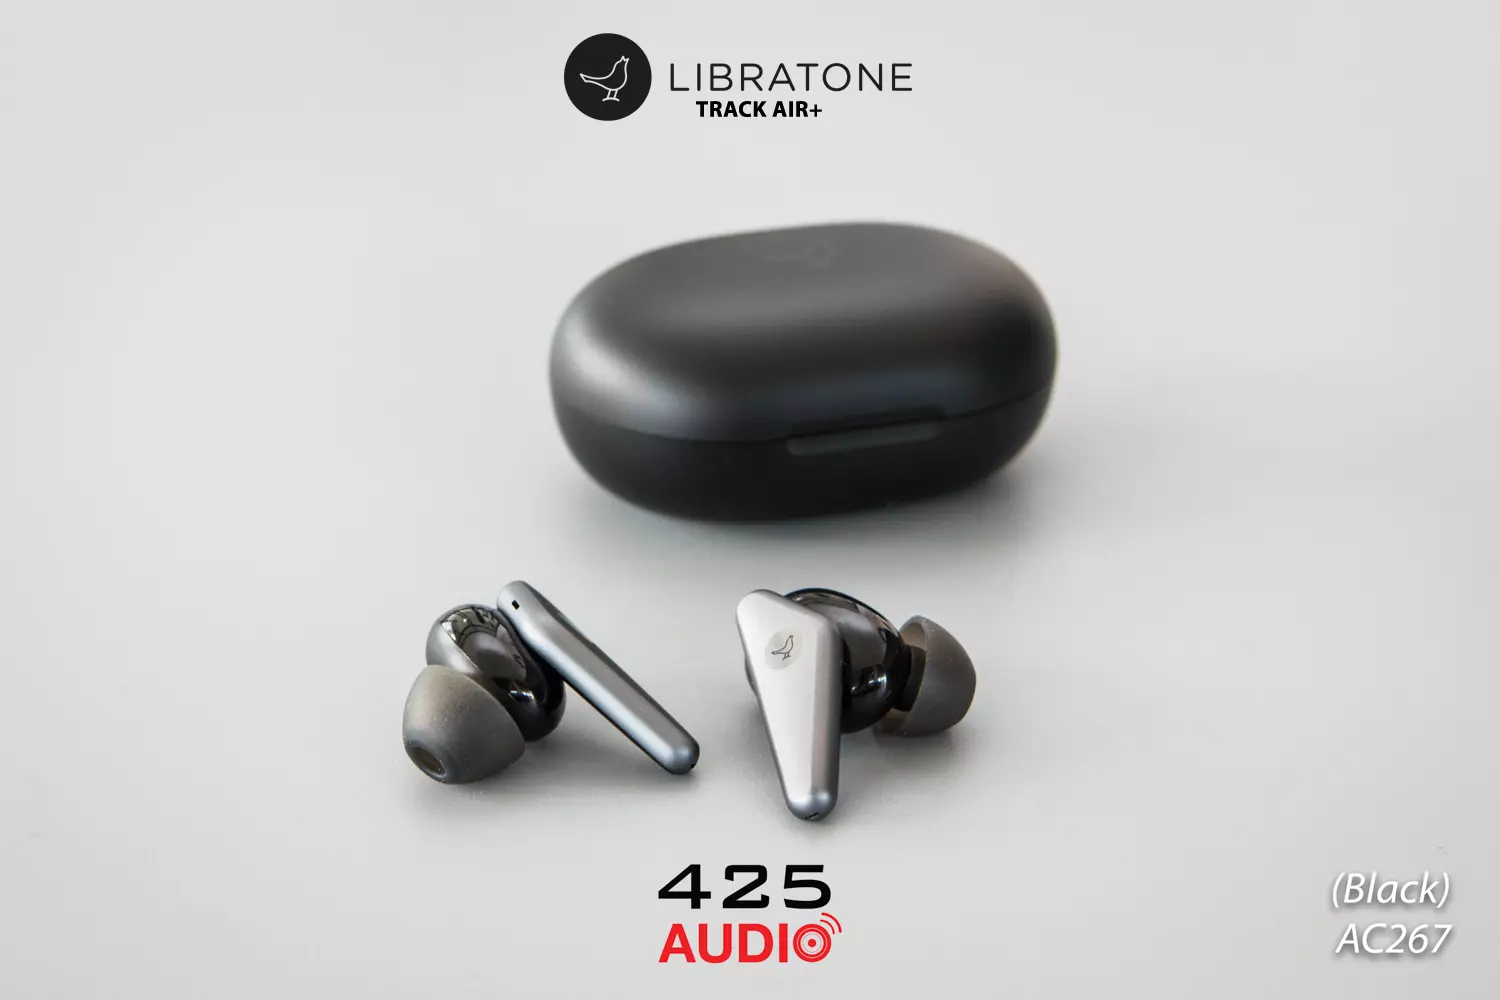 หูฟัง True Wireless Libratone Track Air+ หูฟังไร้สาย Noise Cancelling  มีมาตรฐานการกันน้ำระดับ Ipx4 ใส่เป็นหูฟังออกกำลังกาย ได้สบายๆ รีวิวชัด  คัดของดี สั่งง่าย ส่งไว ได้ของชัวร์